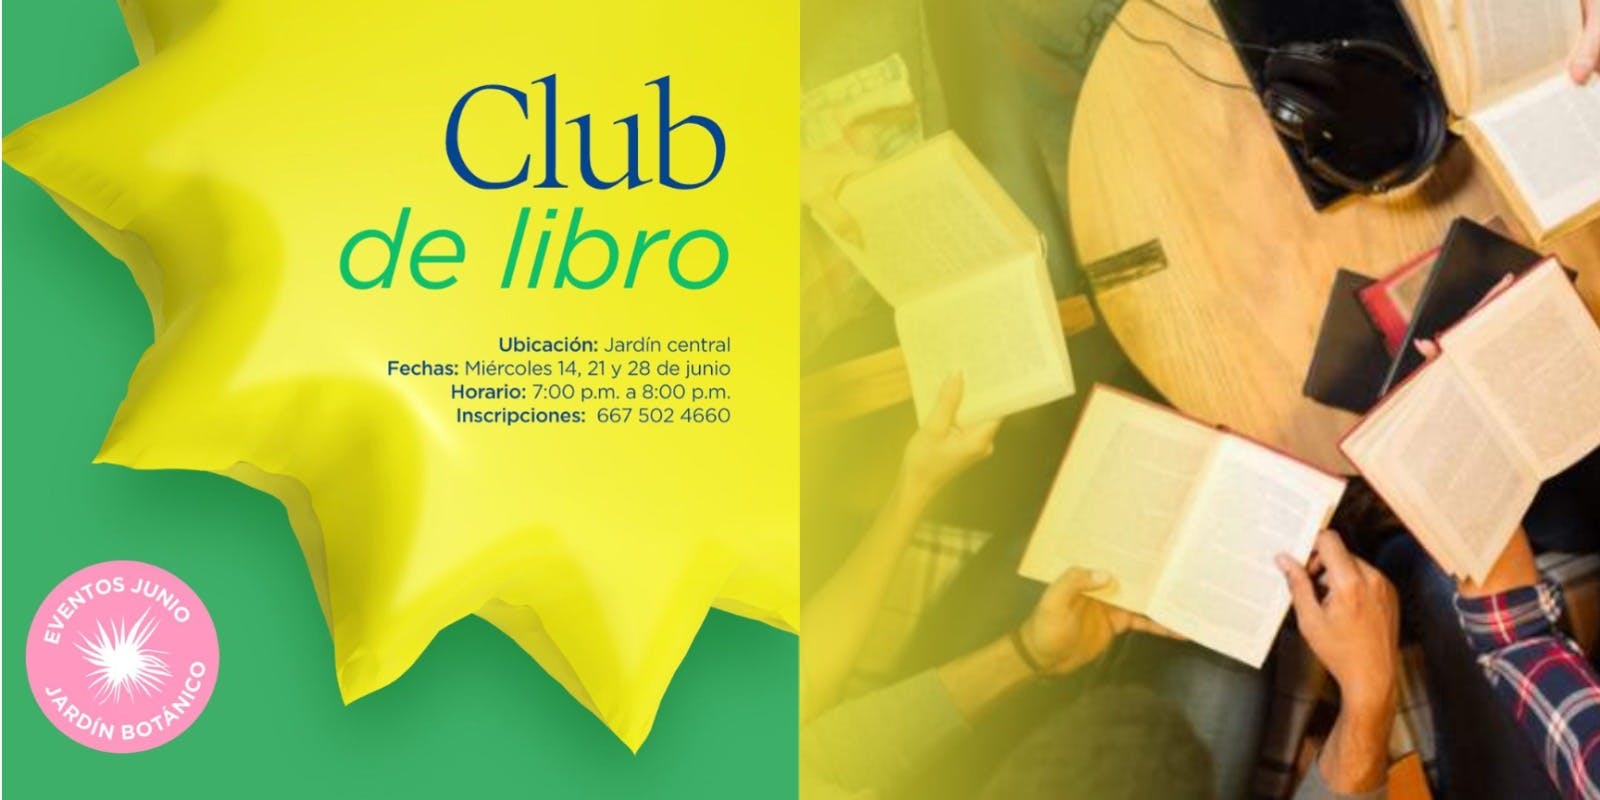 Ceiba - Club del libro